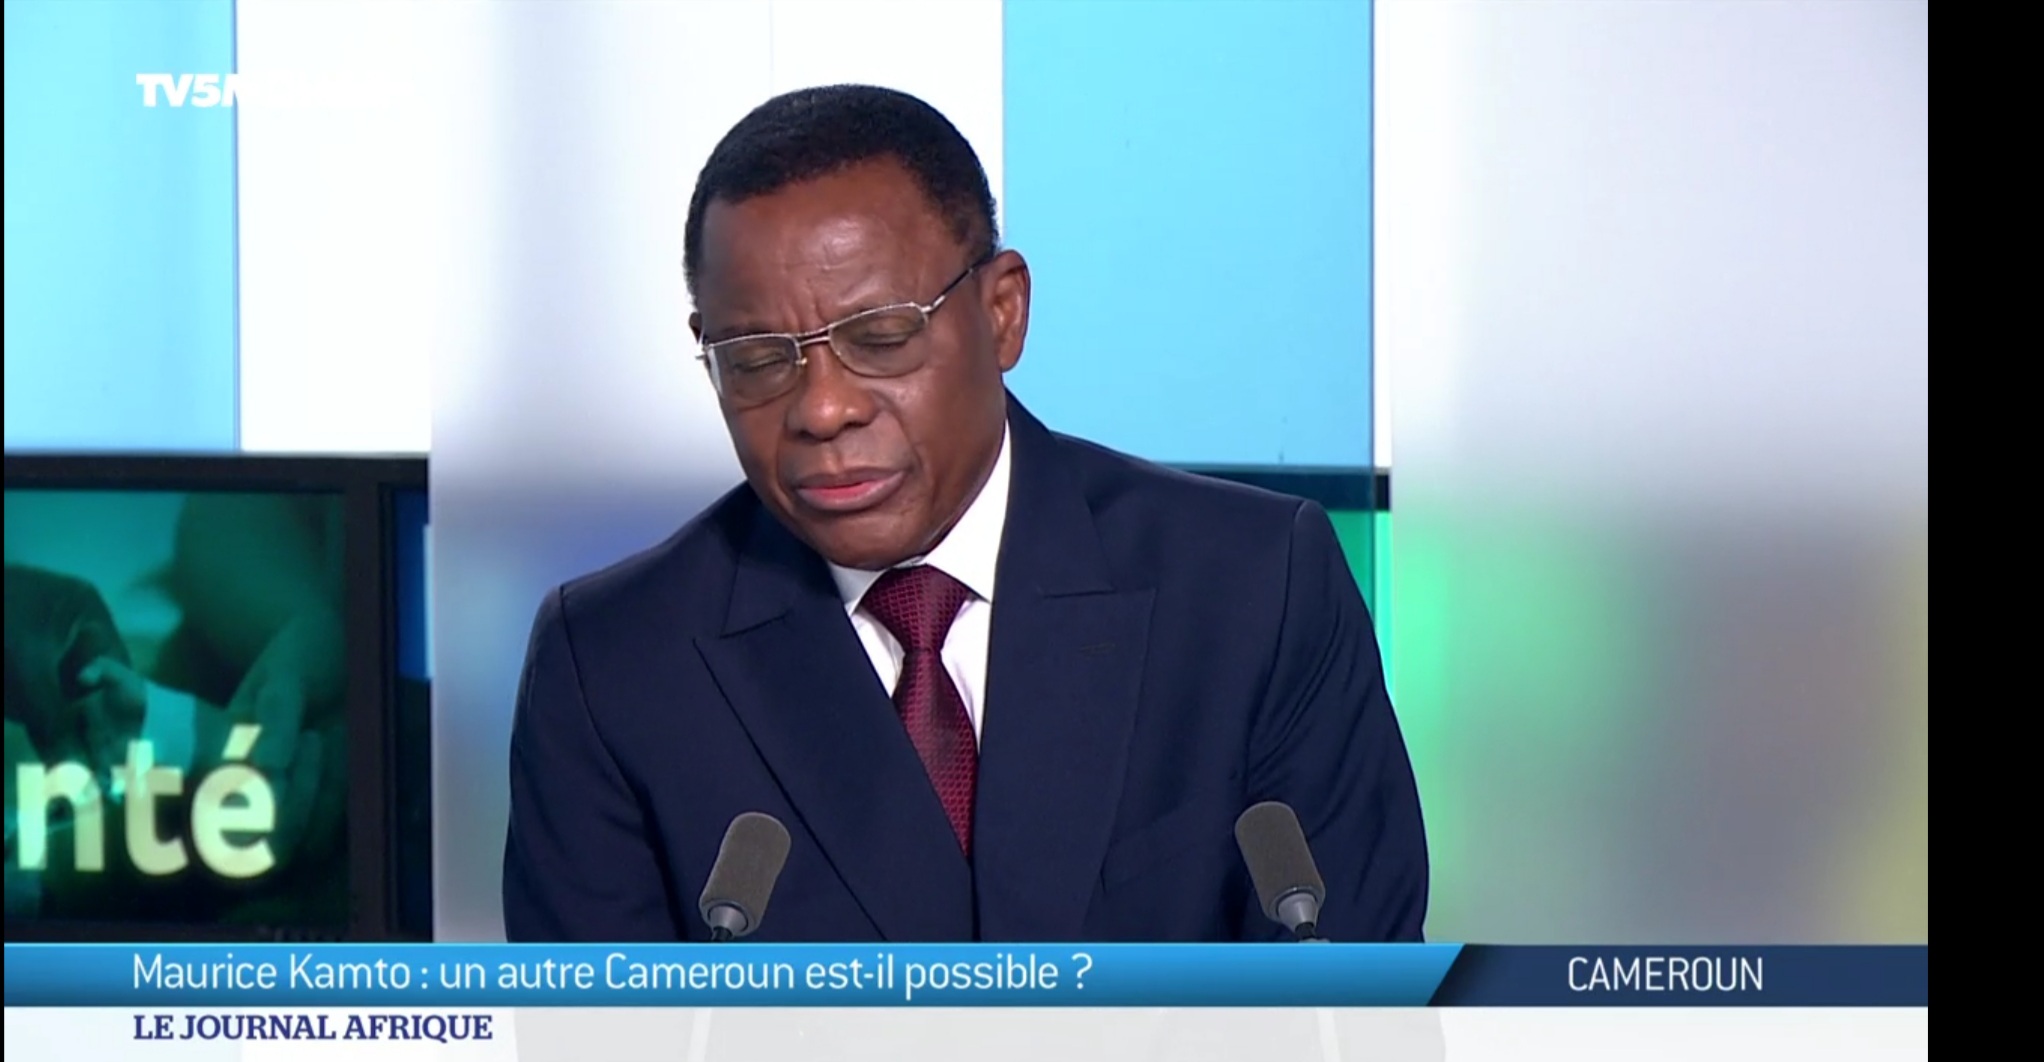 Maurice Kamto sur le plateau de TV5 Monde, dimanche 19/09/2021